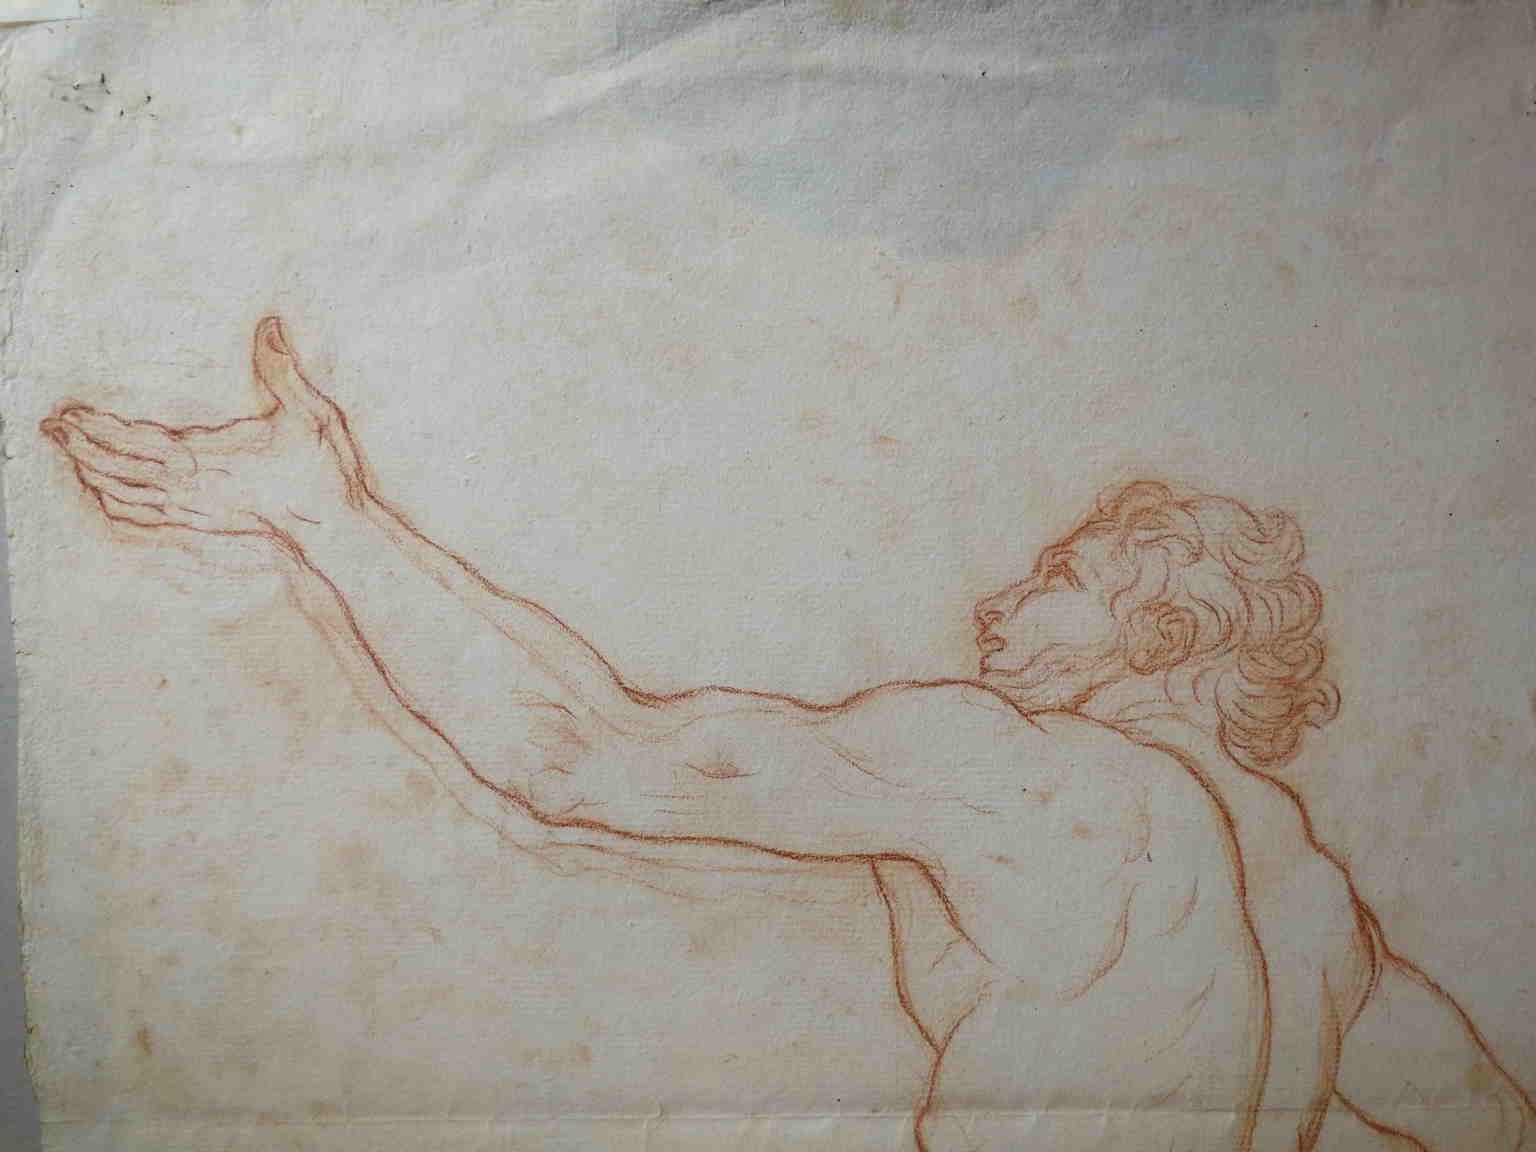 Disegno toscano figurativo nudo maschile a sanguigna su carta del XIX secolo - Other Art Style Art by Bernardino Orsetti